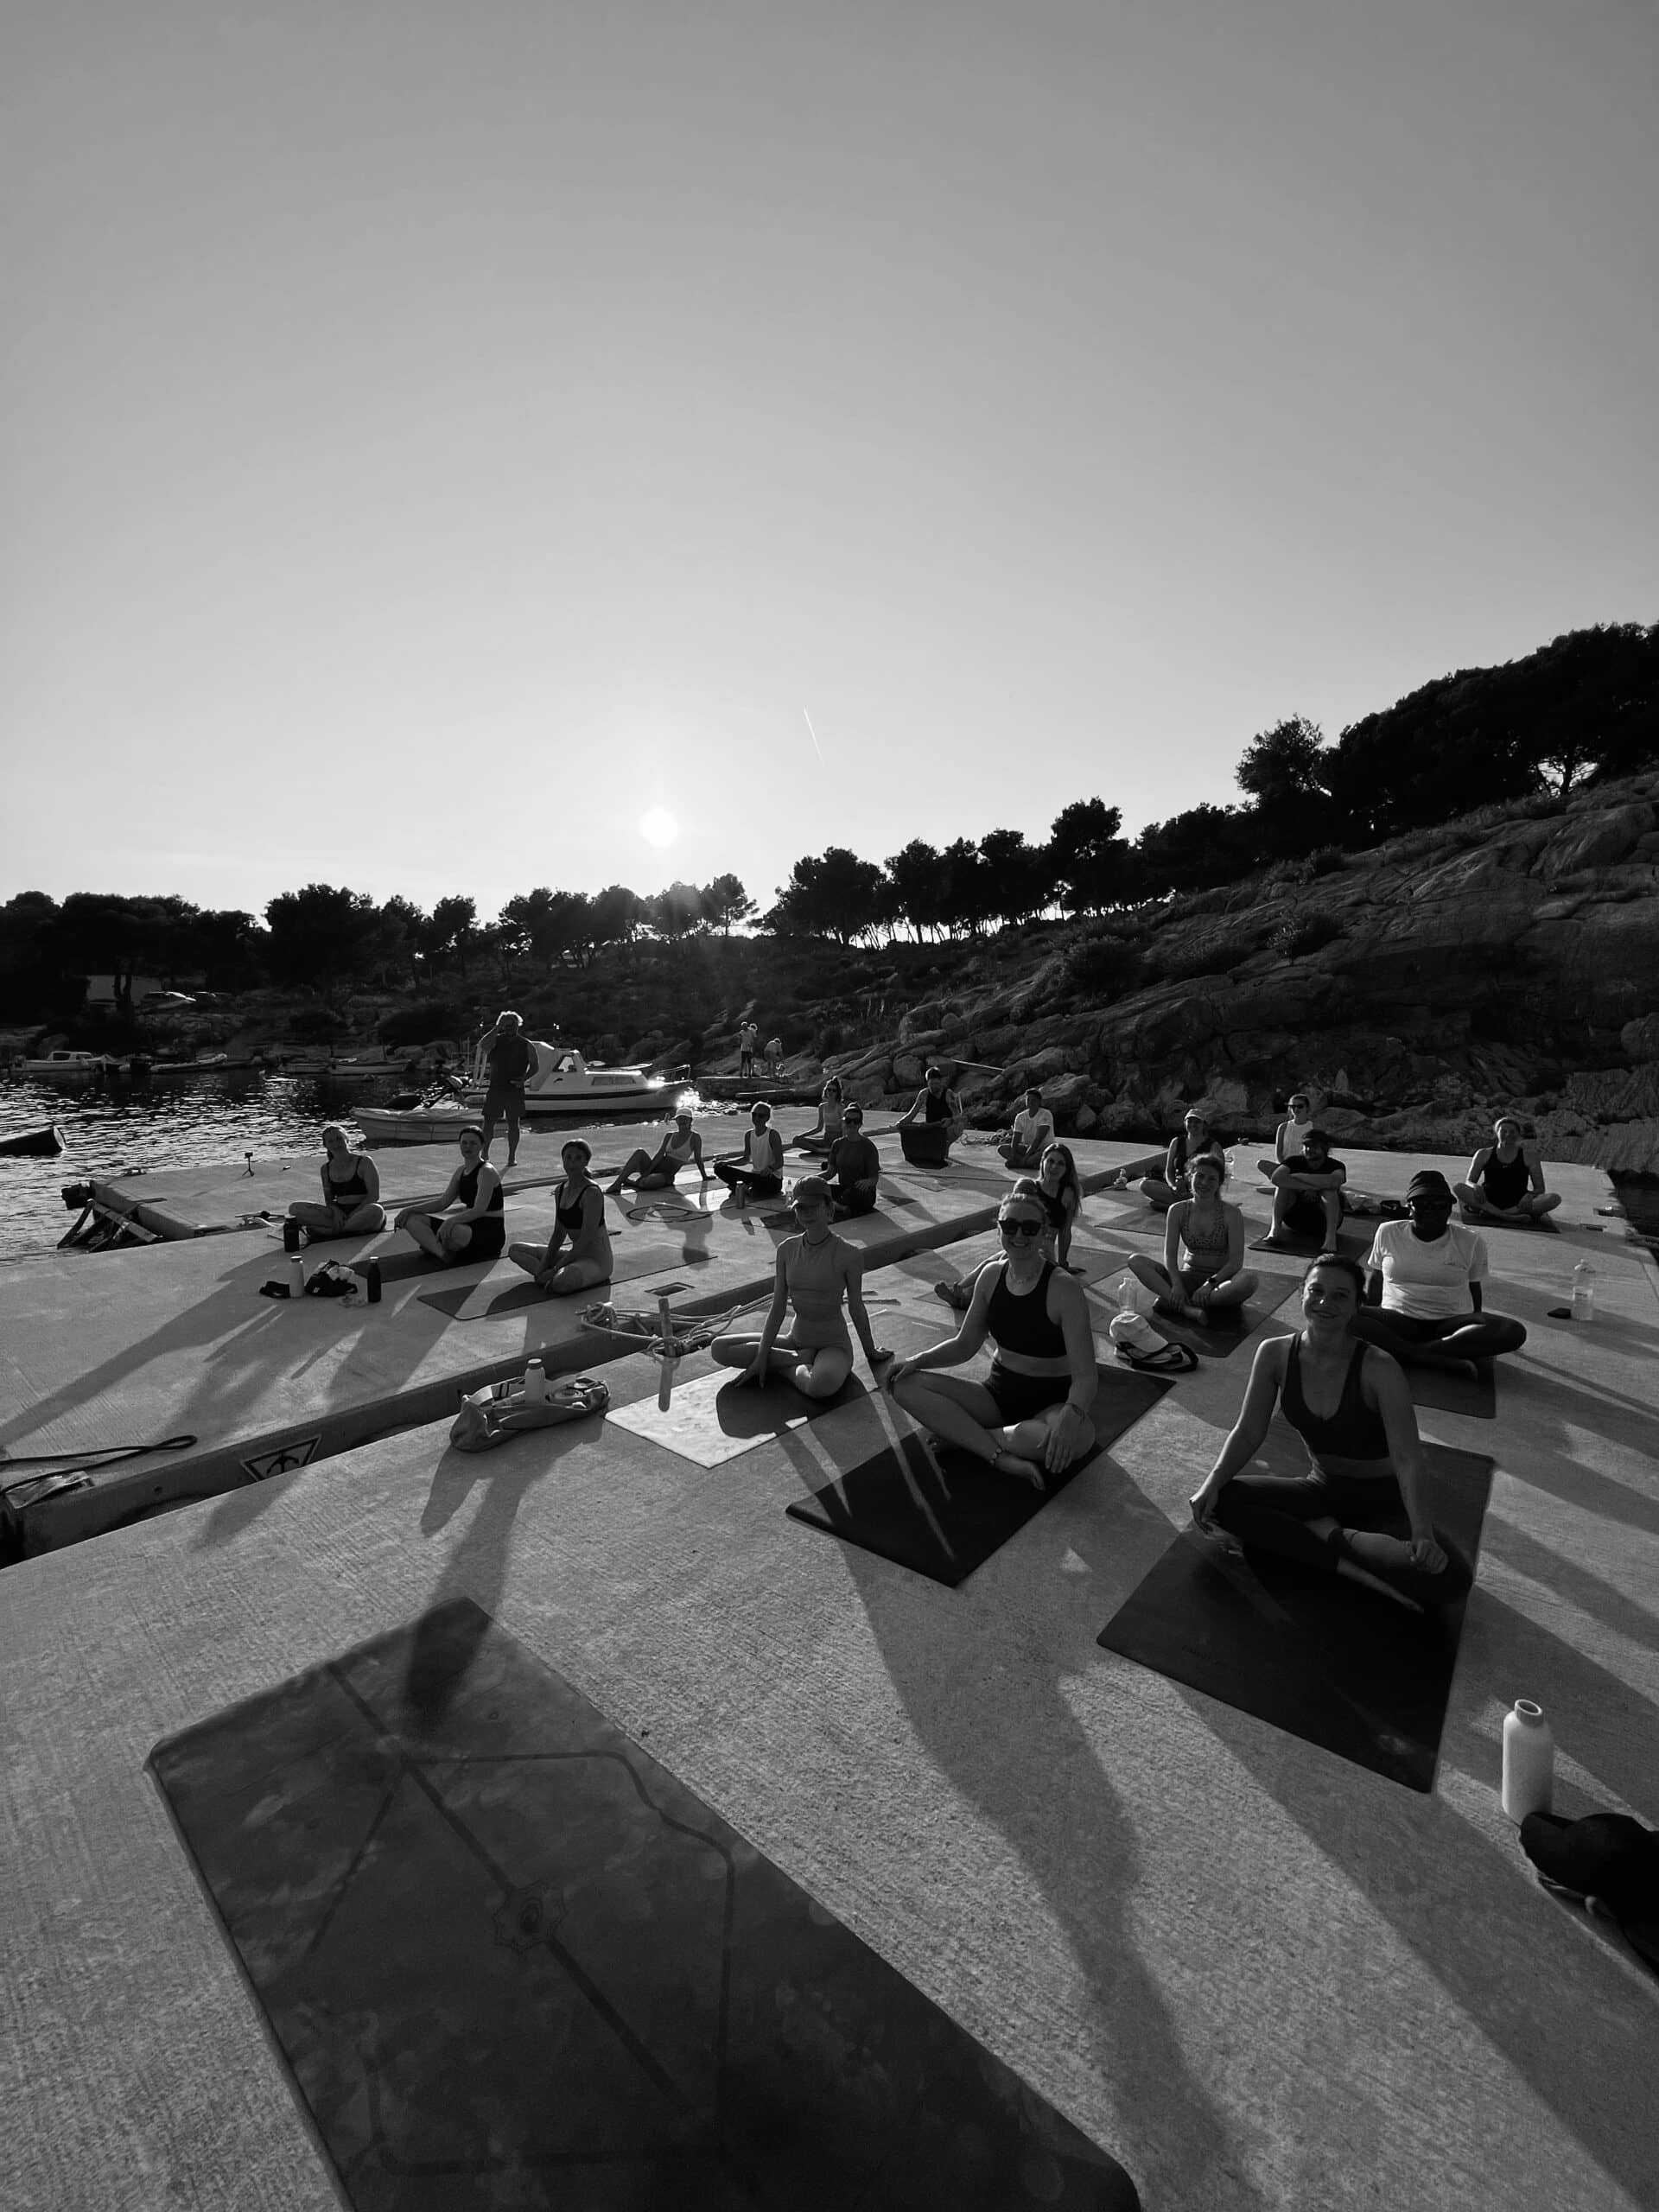 Ein Schwarzweißfoto einer Gruppe, die während ihres Segelurlaubs in einer natürlichen, felsigen Umgebung unter klarem Himmel auf Matten Yoga praktiziert, im Hintergrund die Sonne untergeht.